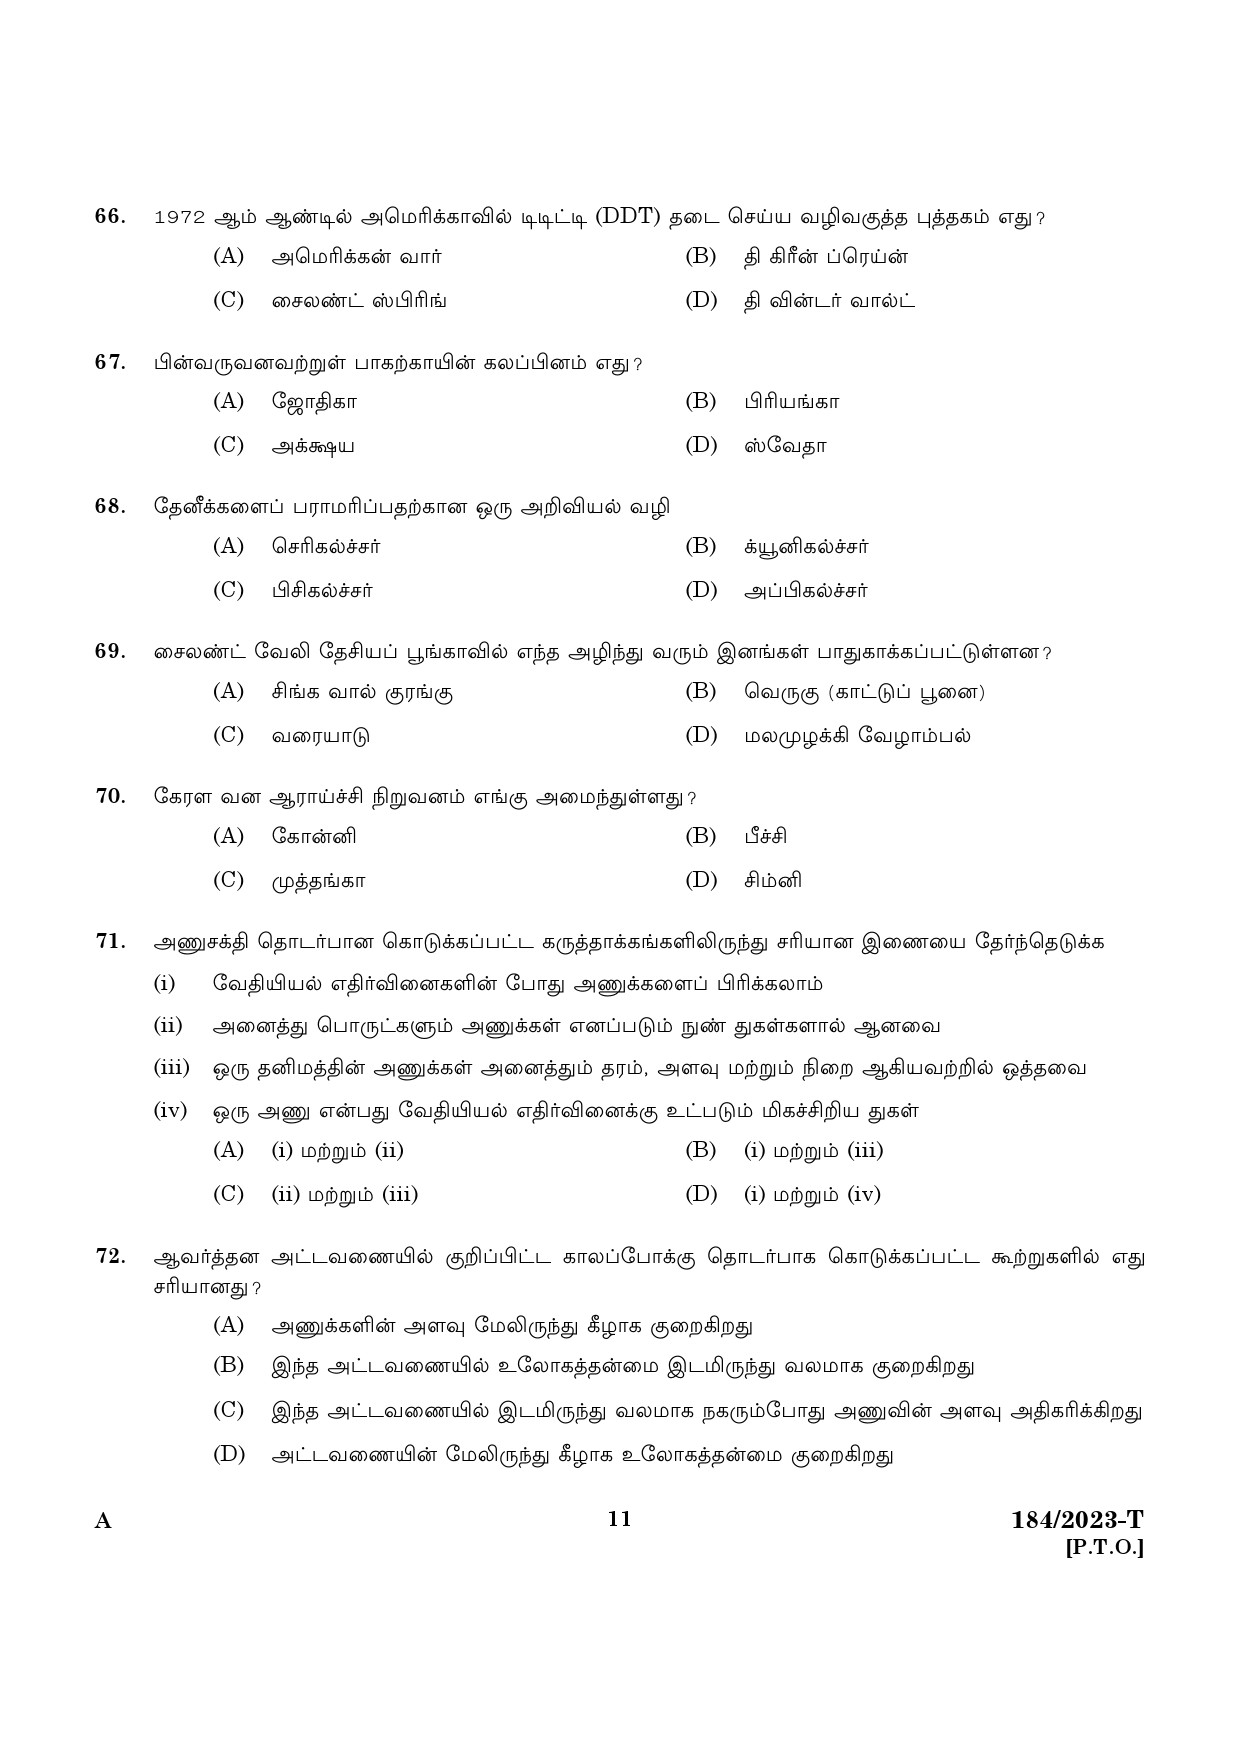 KPSC LGS Tamil Exam 2023 Code 1842023 T 9